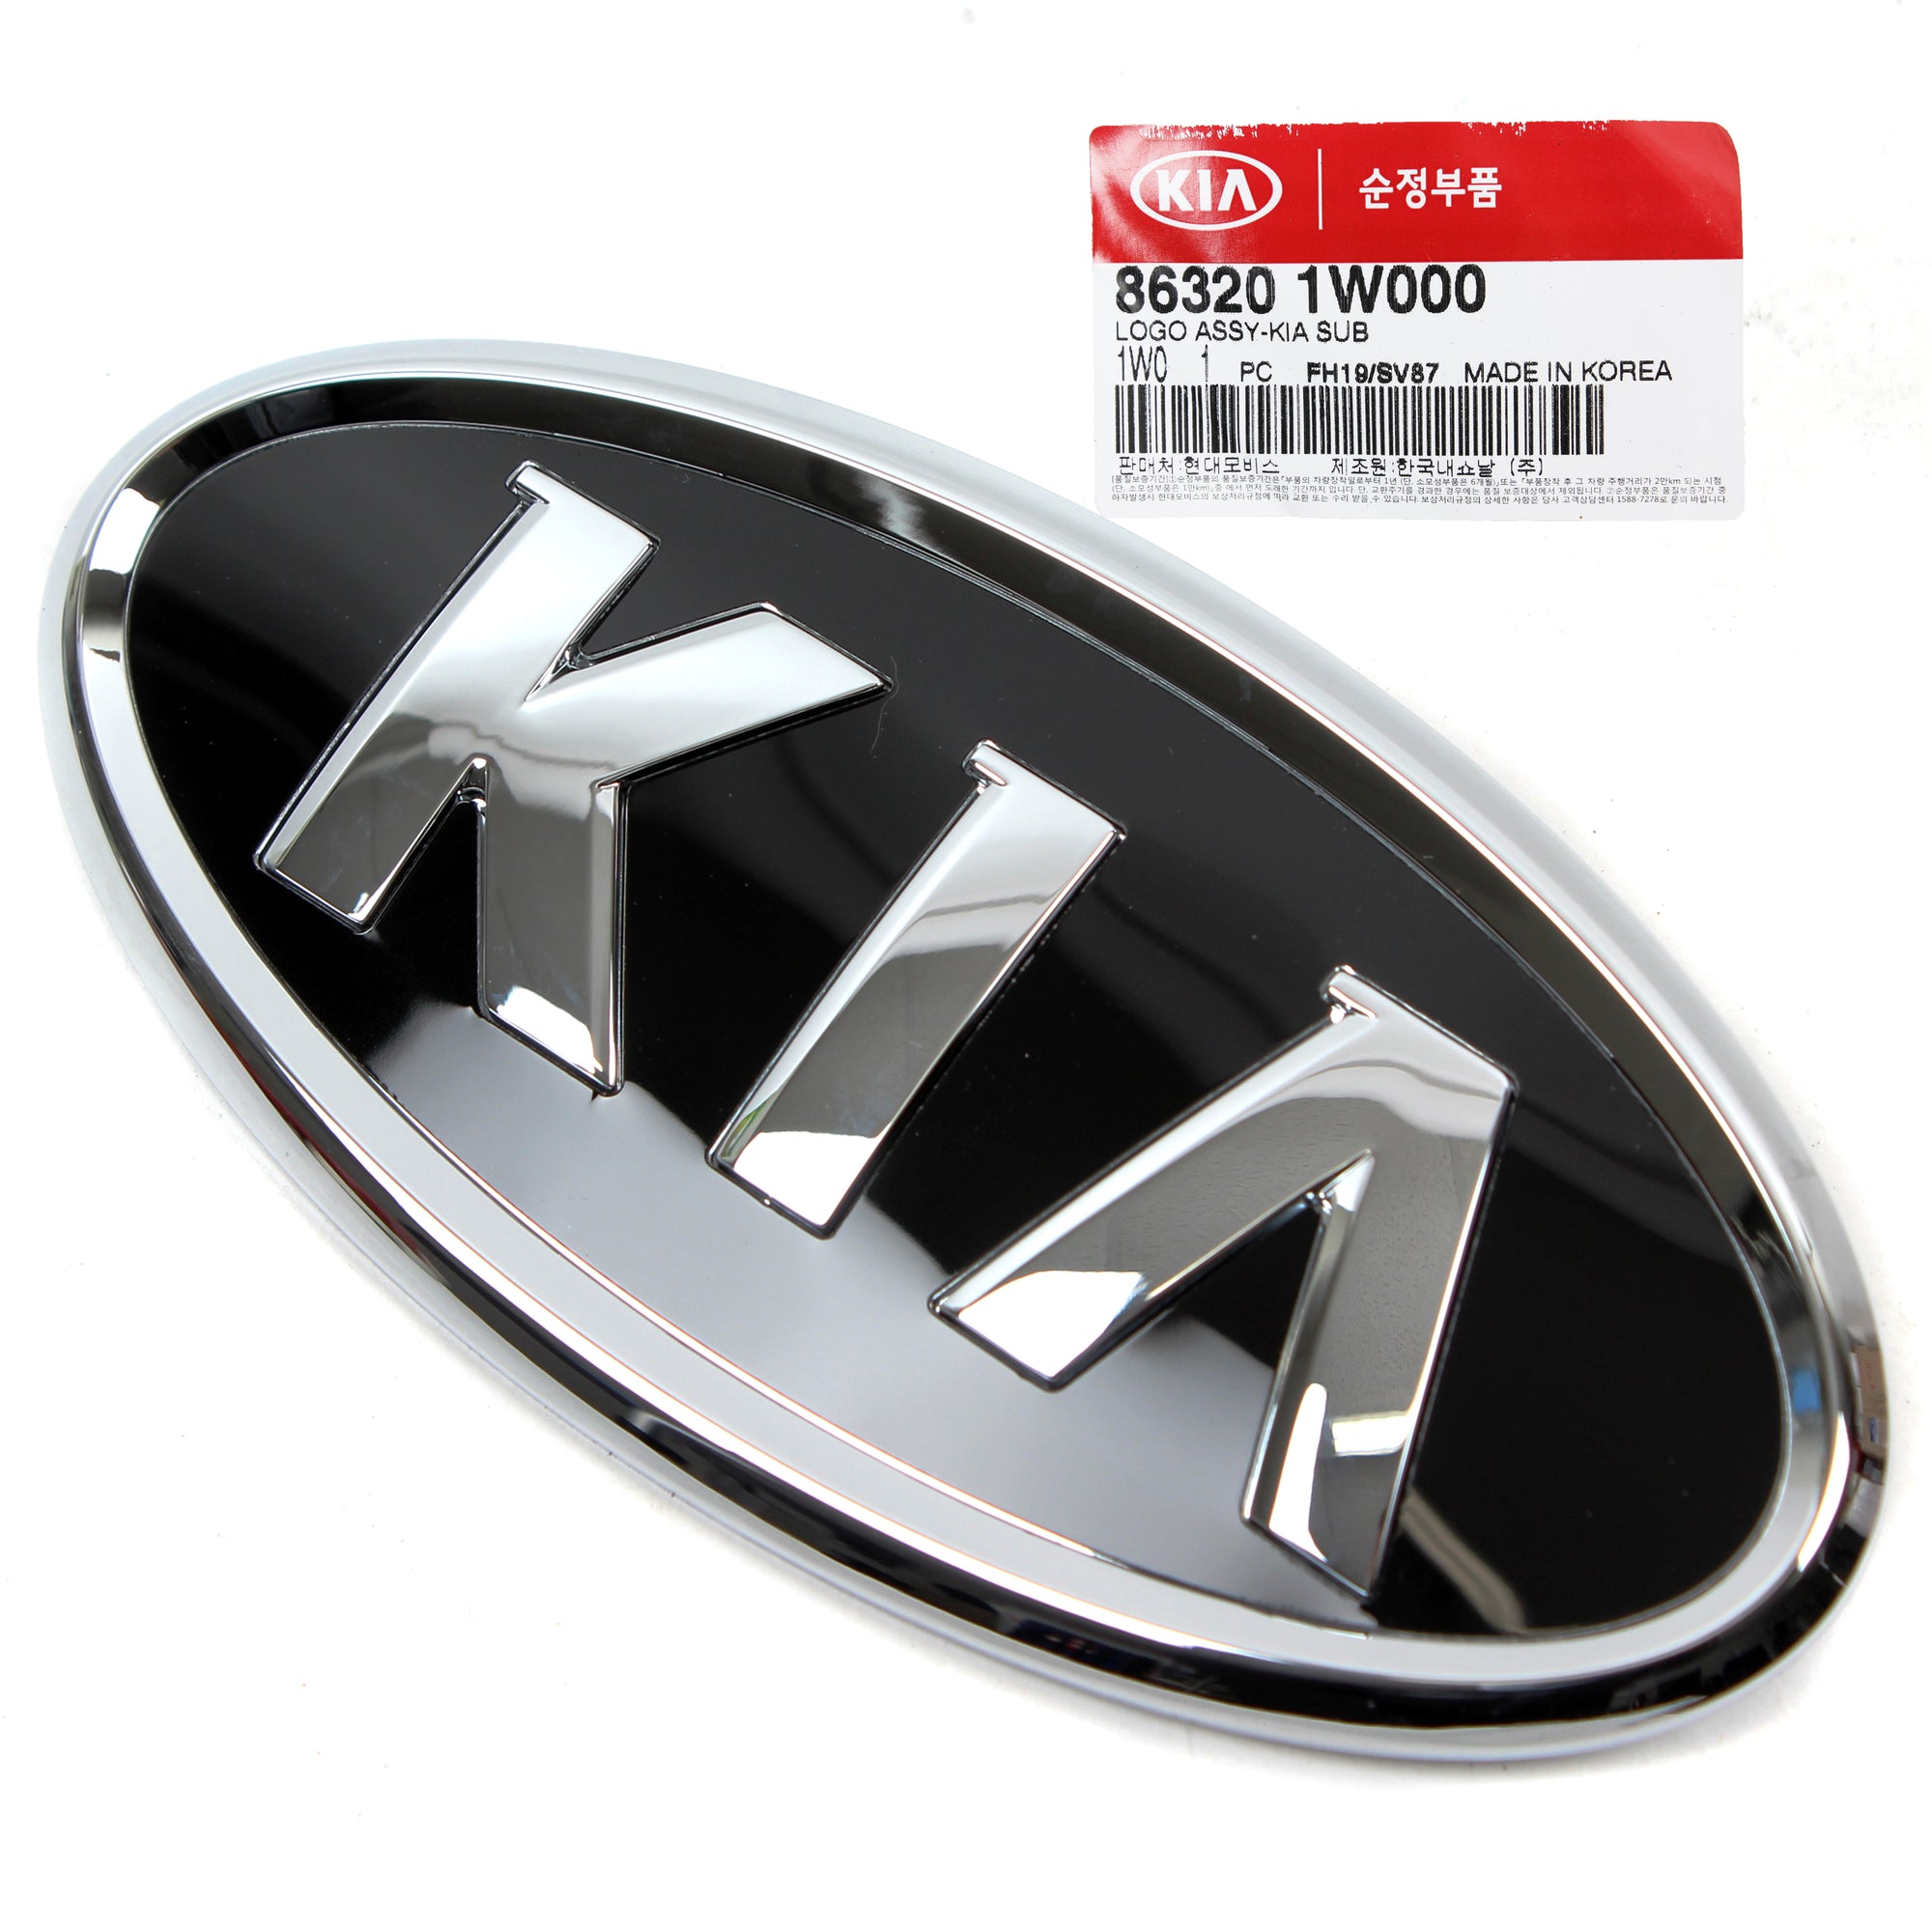 GENUINE Front Grille KIA Logo Emblem for 2012-2015 Kia Rio Sedan 863201W000